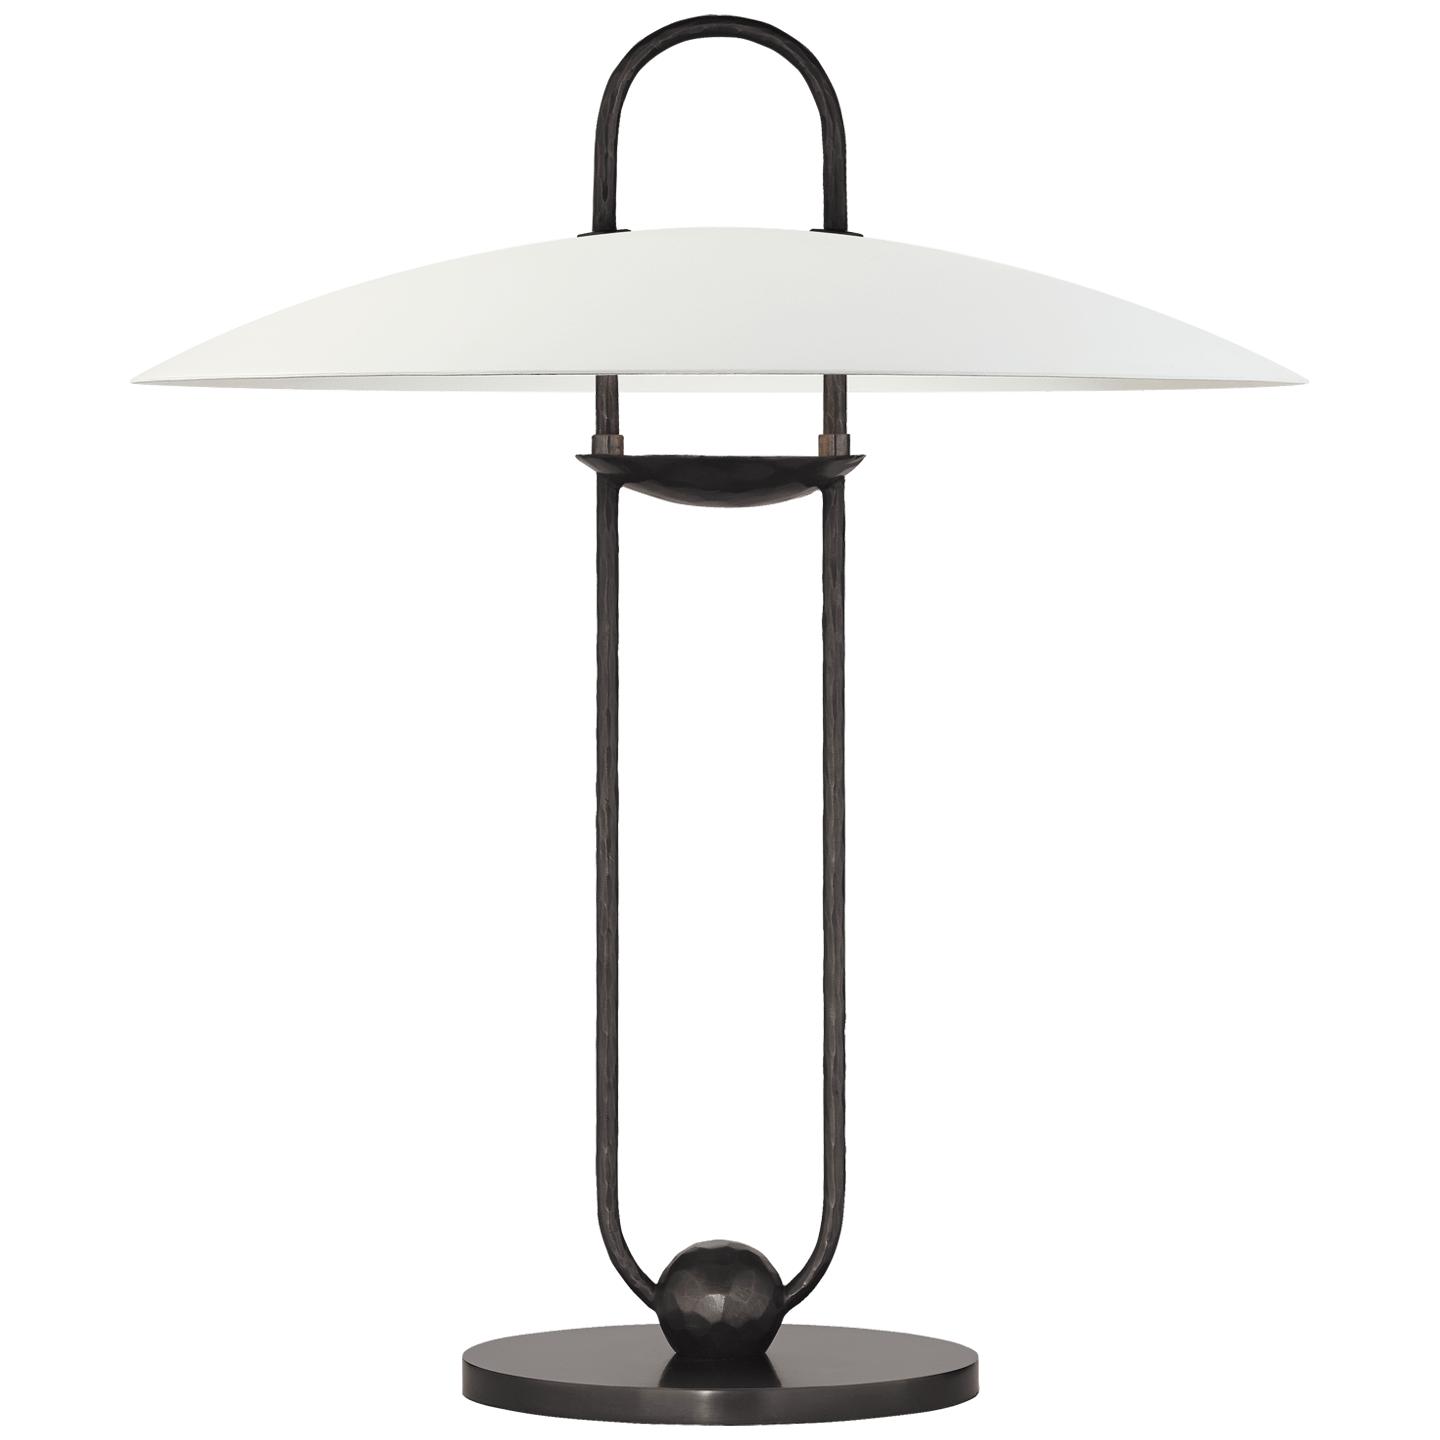 Купить Настольная лампа Cara Sculpted Table Lamp в интернет-магазине roooms.ru